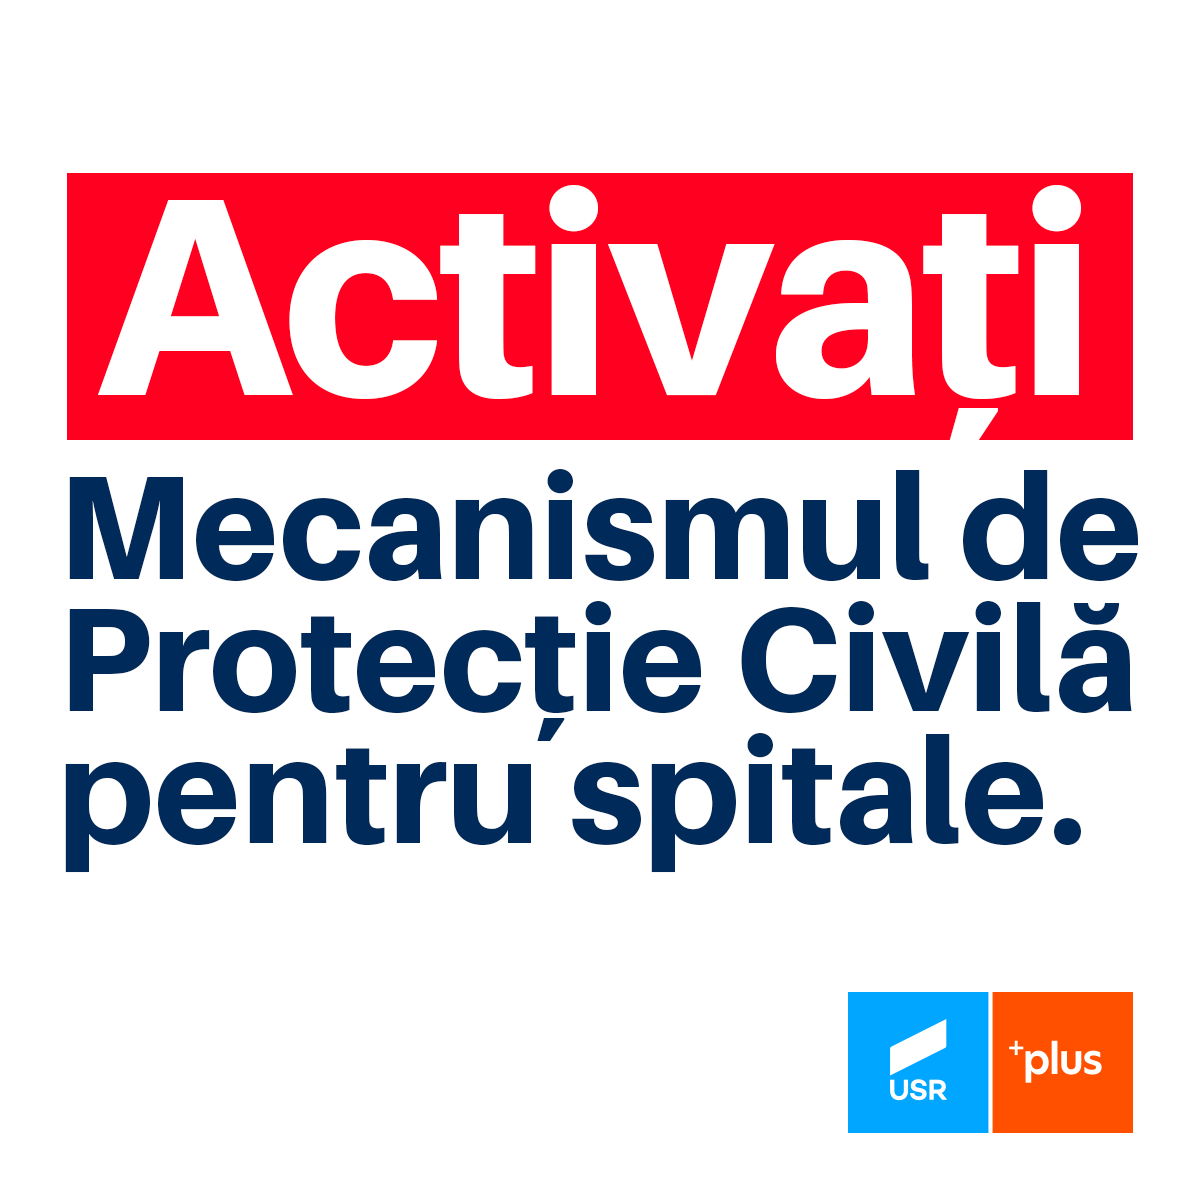 SR PLUS solicită Guvernului activarea Mecanismului de Protecţie Civilă pentru spitale